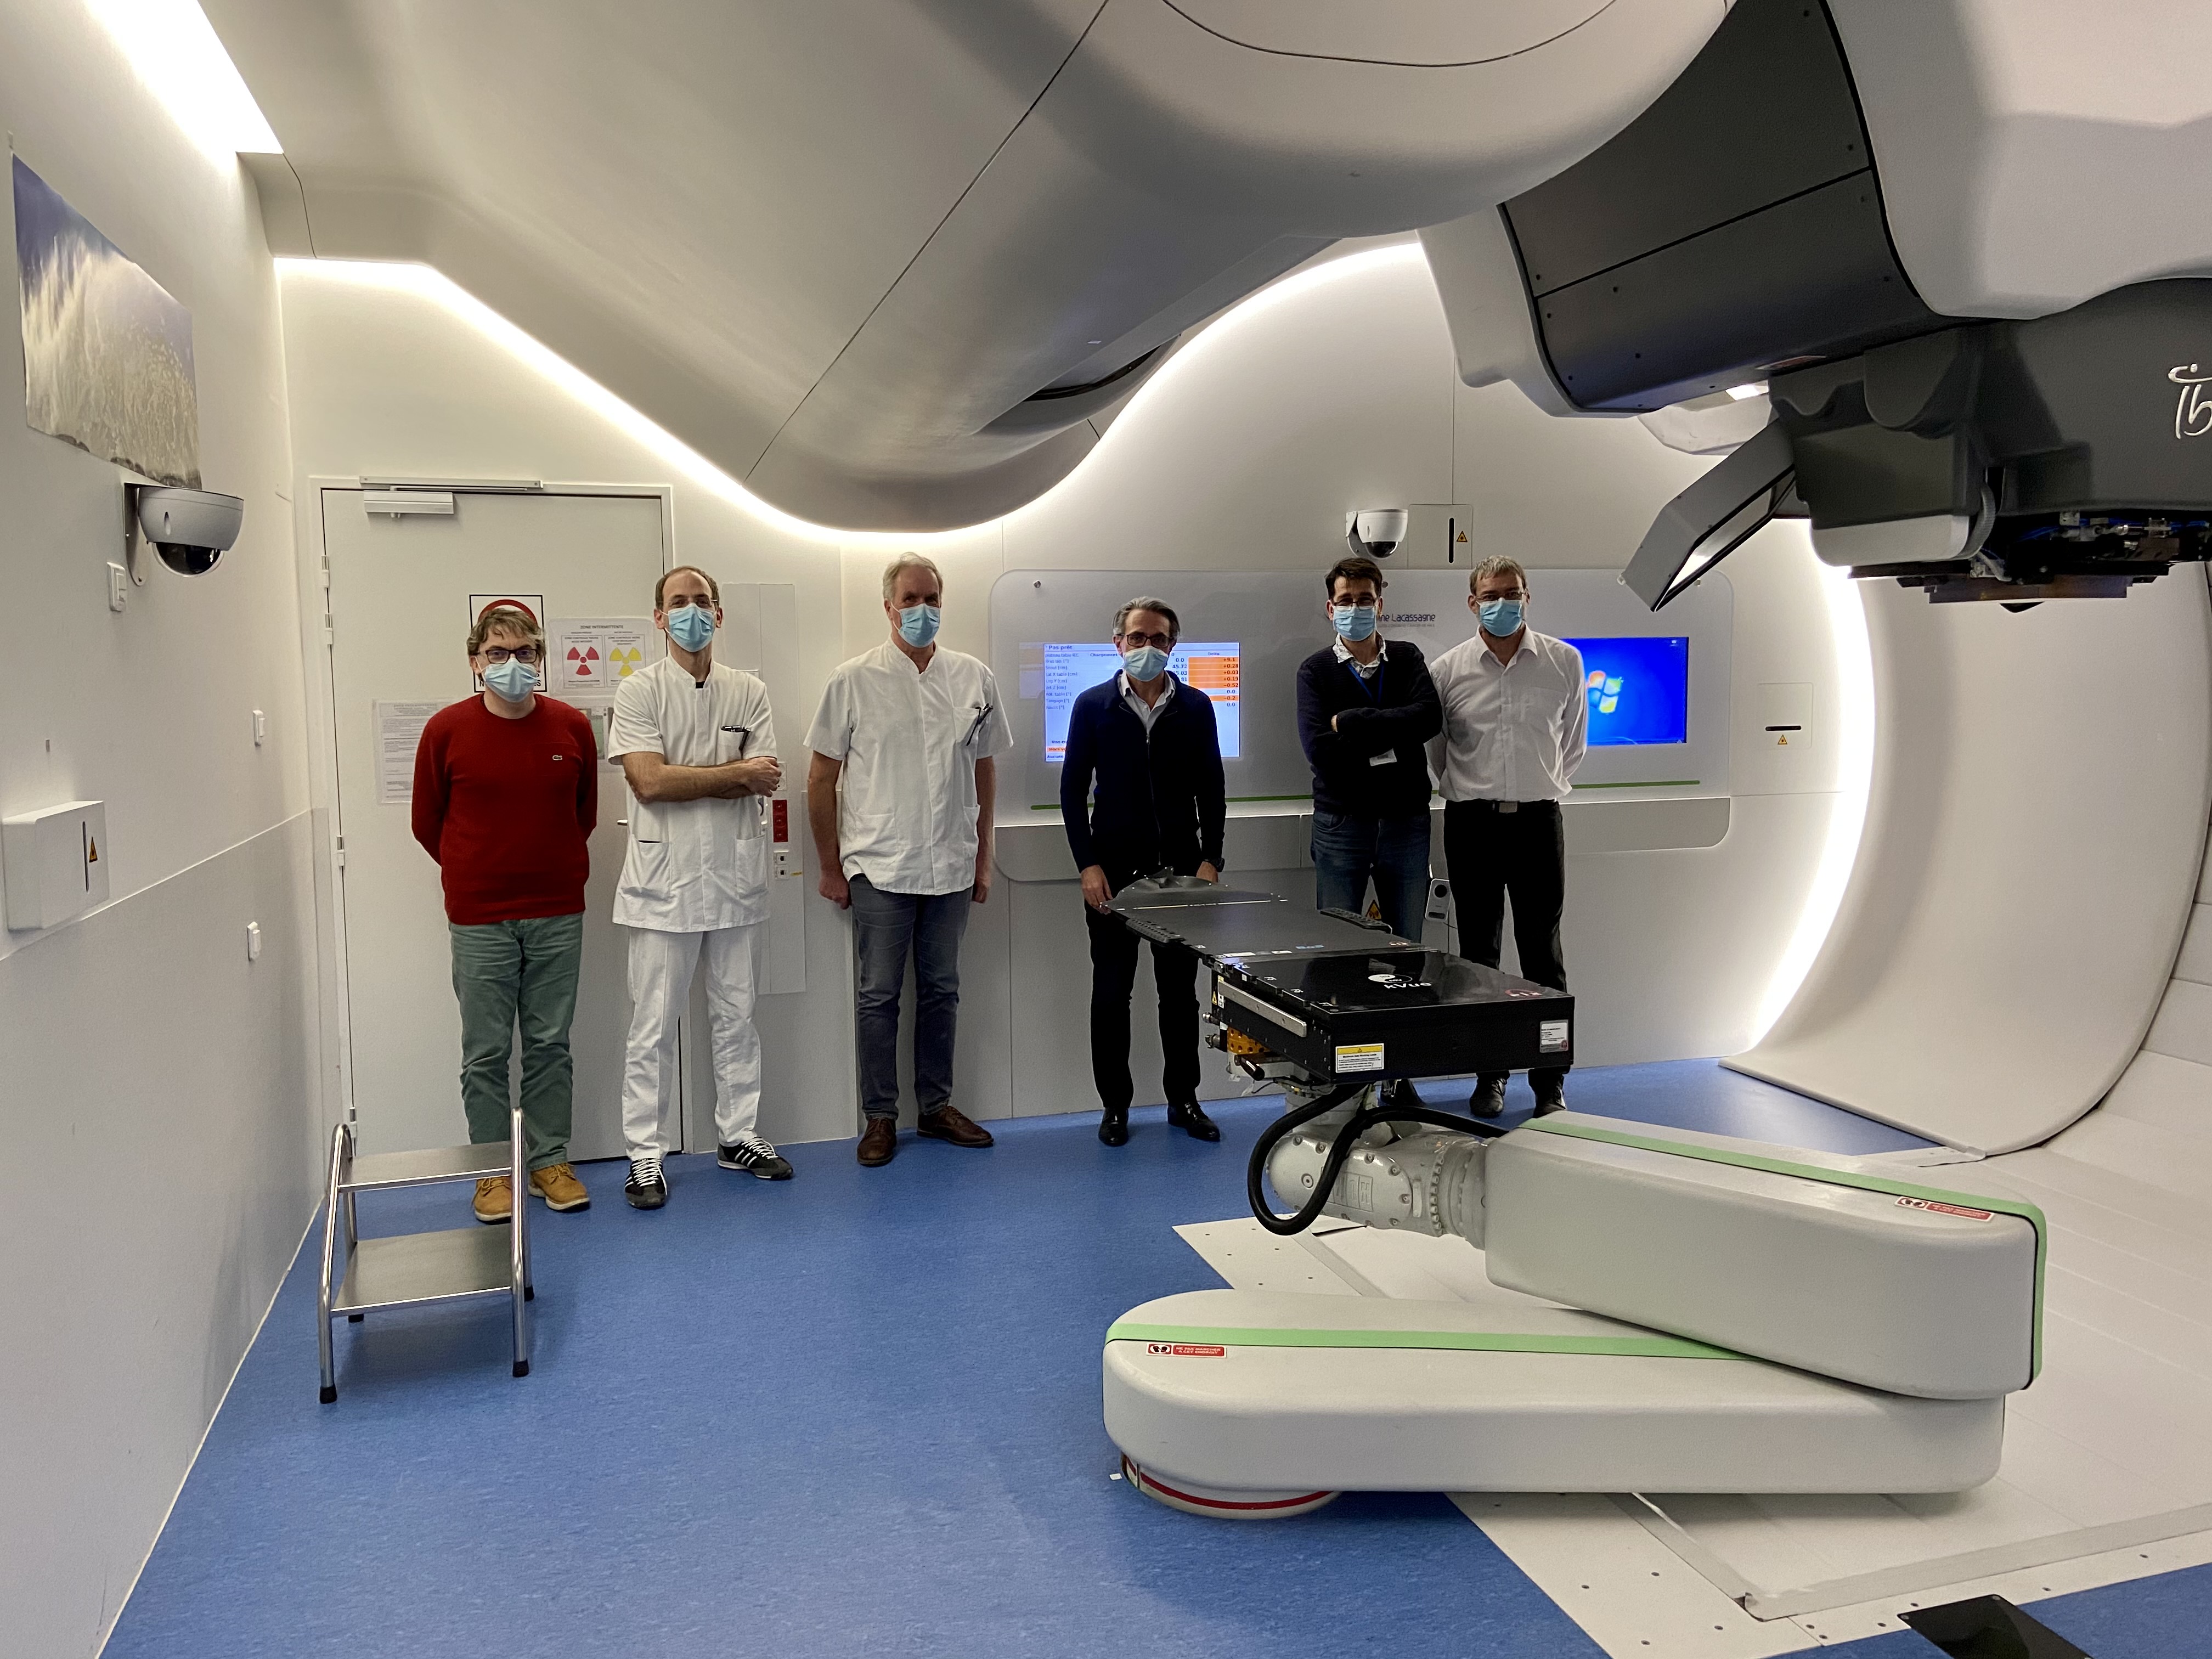 Photo de groupe (6 personnes) de la collaboration IN2P3 / CAL. Les personnes se tiennent dans une salle contenant du matériel d'imagerie médicale